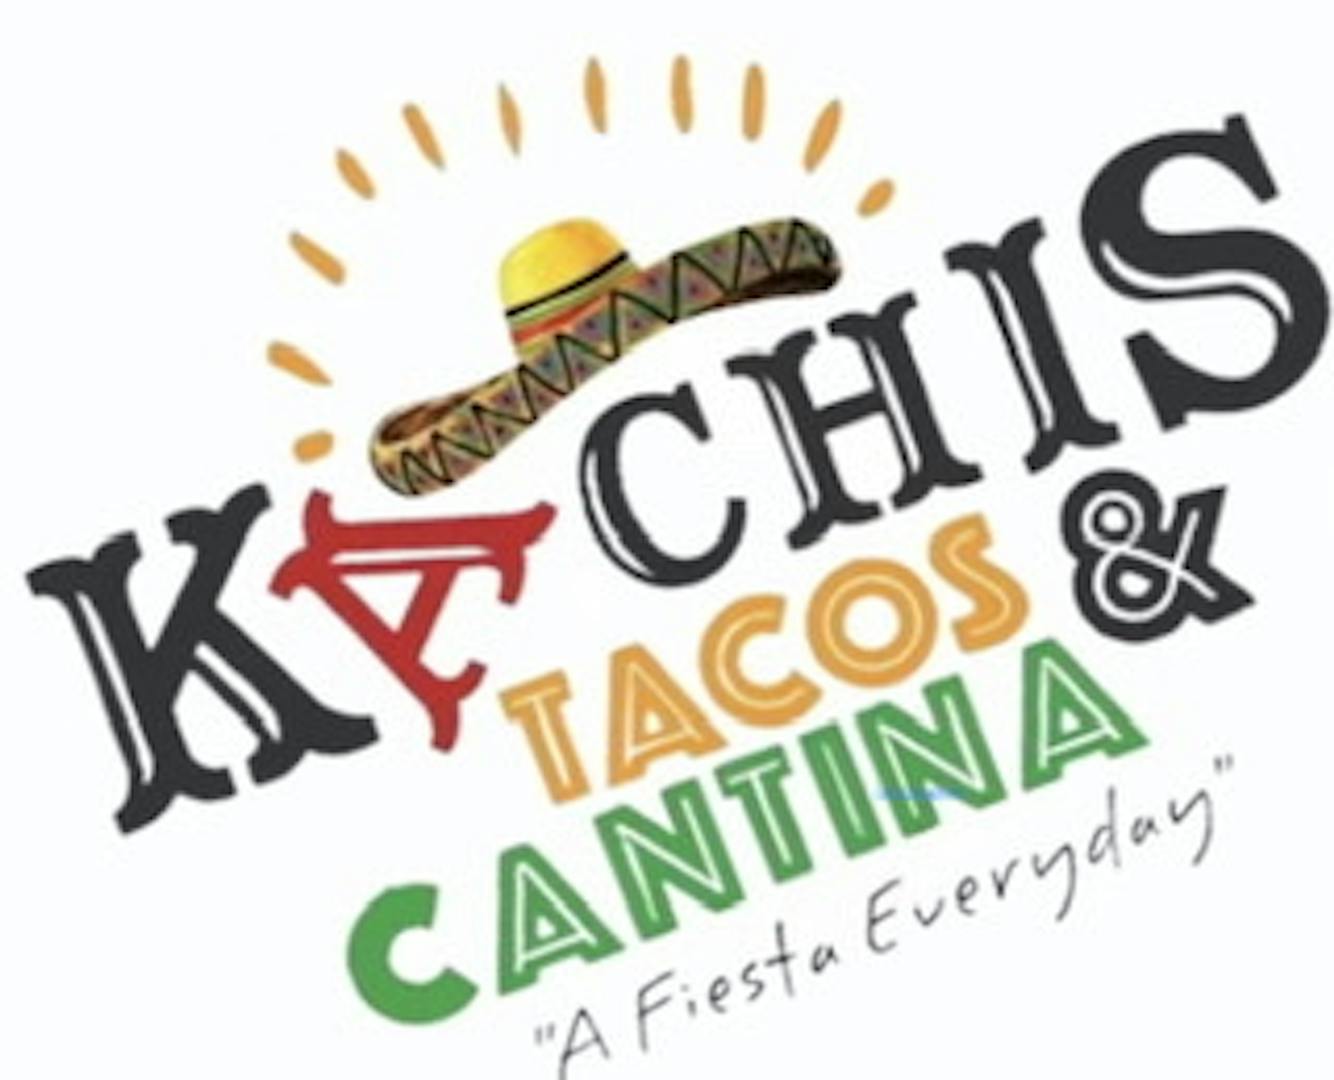 Kachis Tacos & Cantina